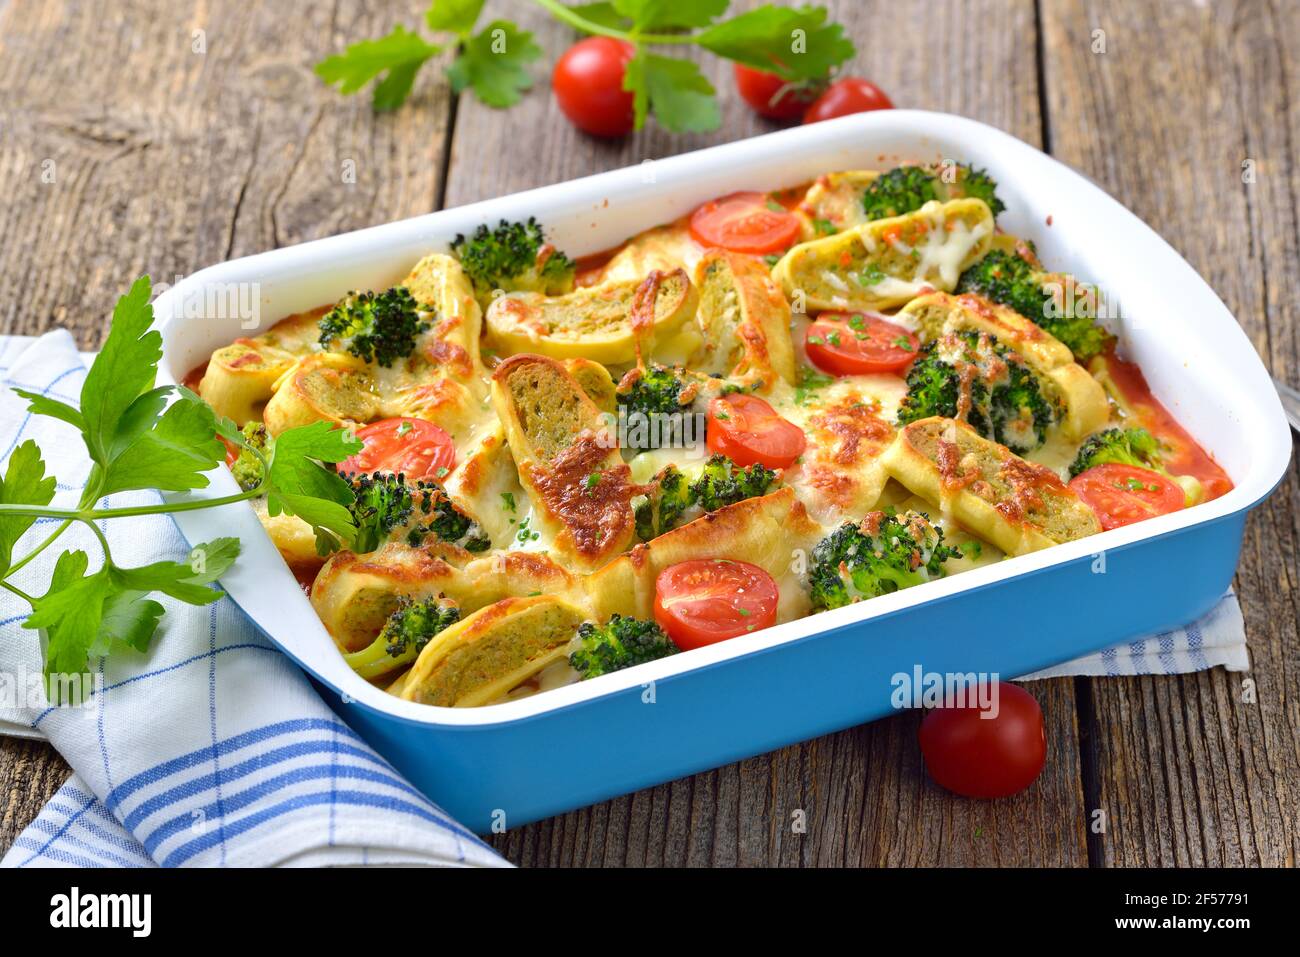 Casseruola vegetariana con ravioli vegetali svevi tagliati, pomodori, broccoli e formaggio serviti caldi dal forno Foto Stock